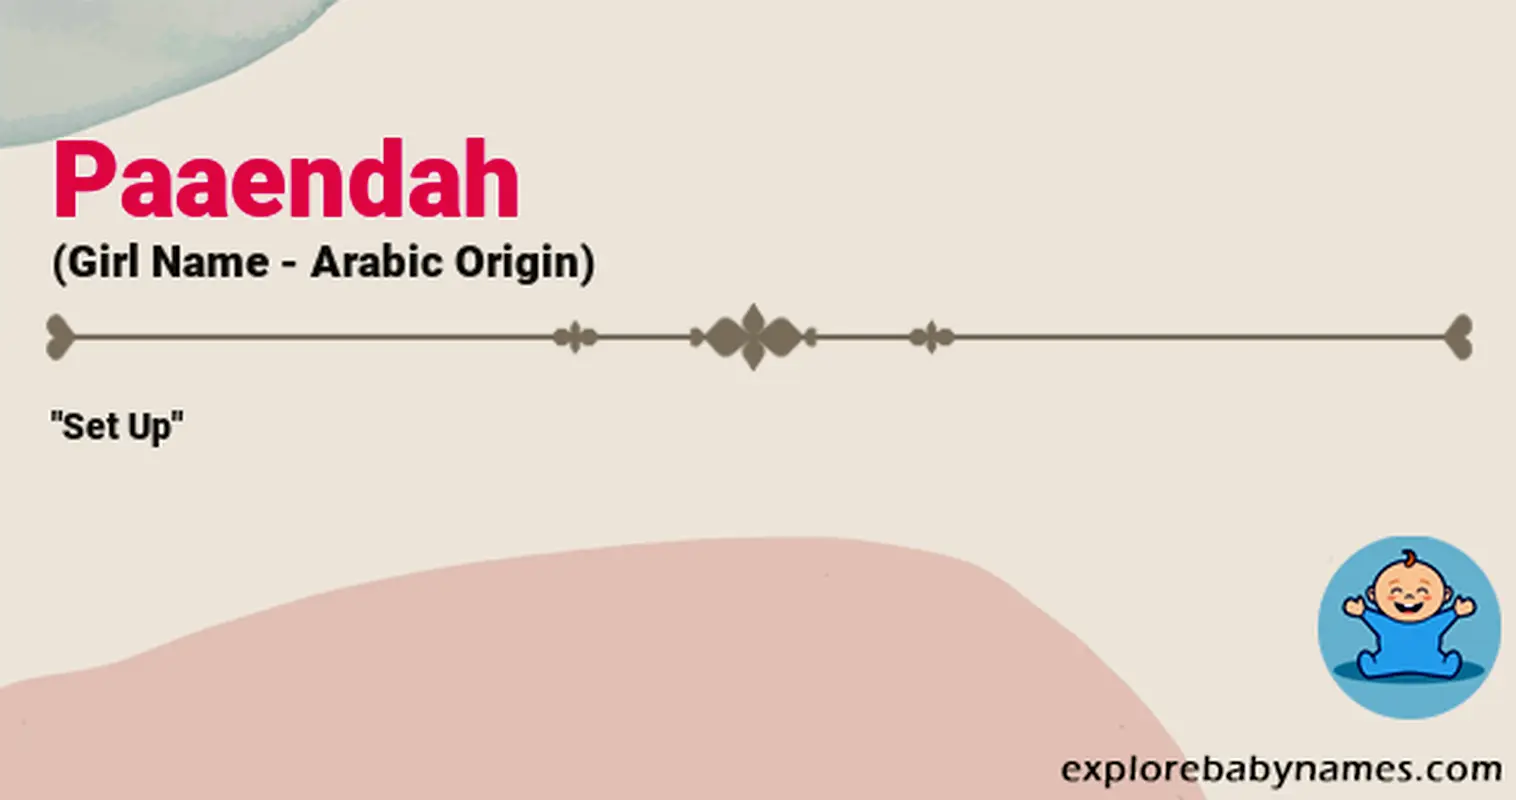 Meaning of Paaendah